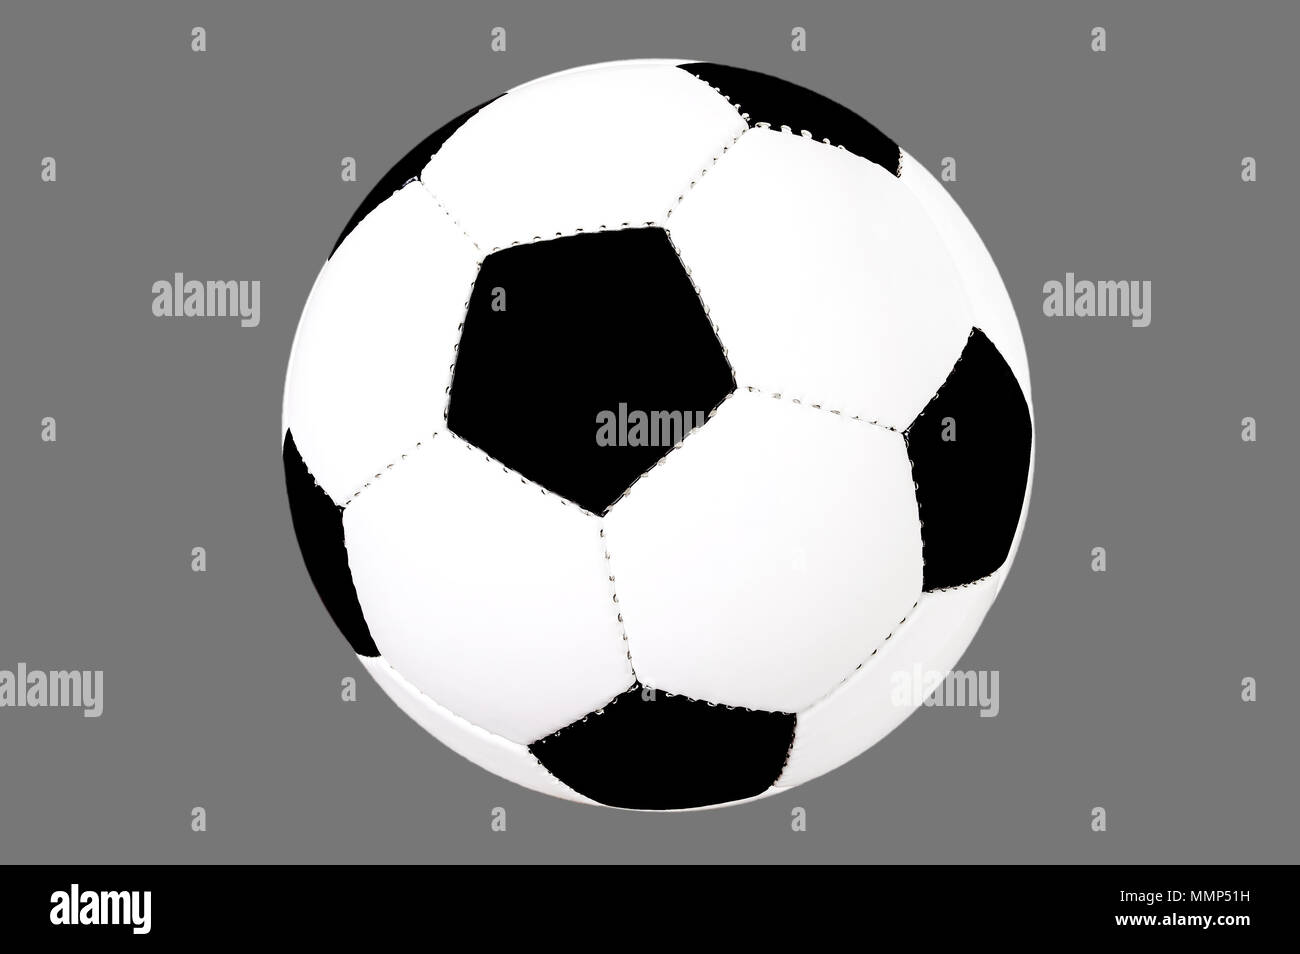 Pallone da calcio isolato, calcio tagliato fuori, lo sfondo grigio, bianco e nero Foto Stock